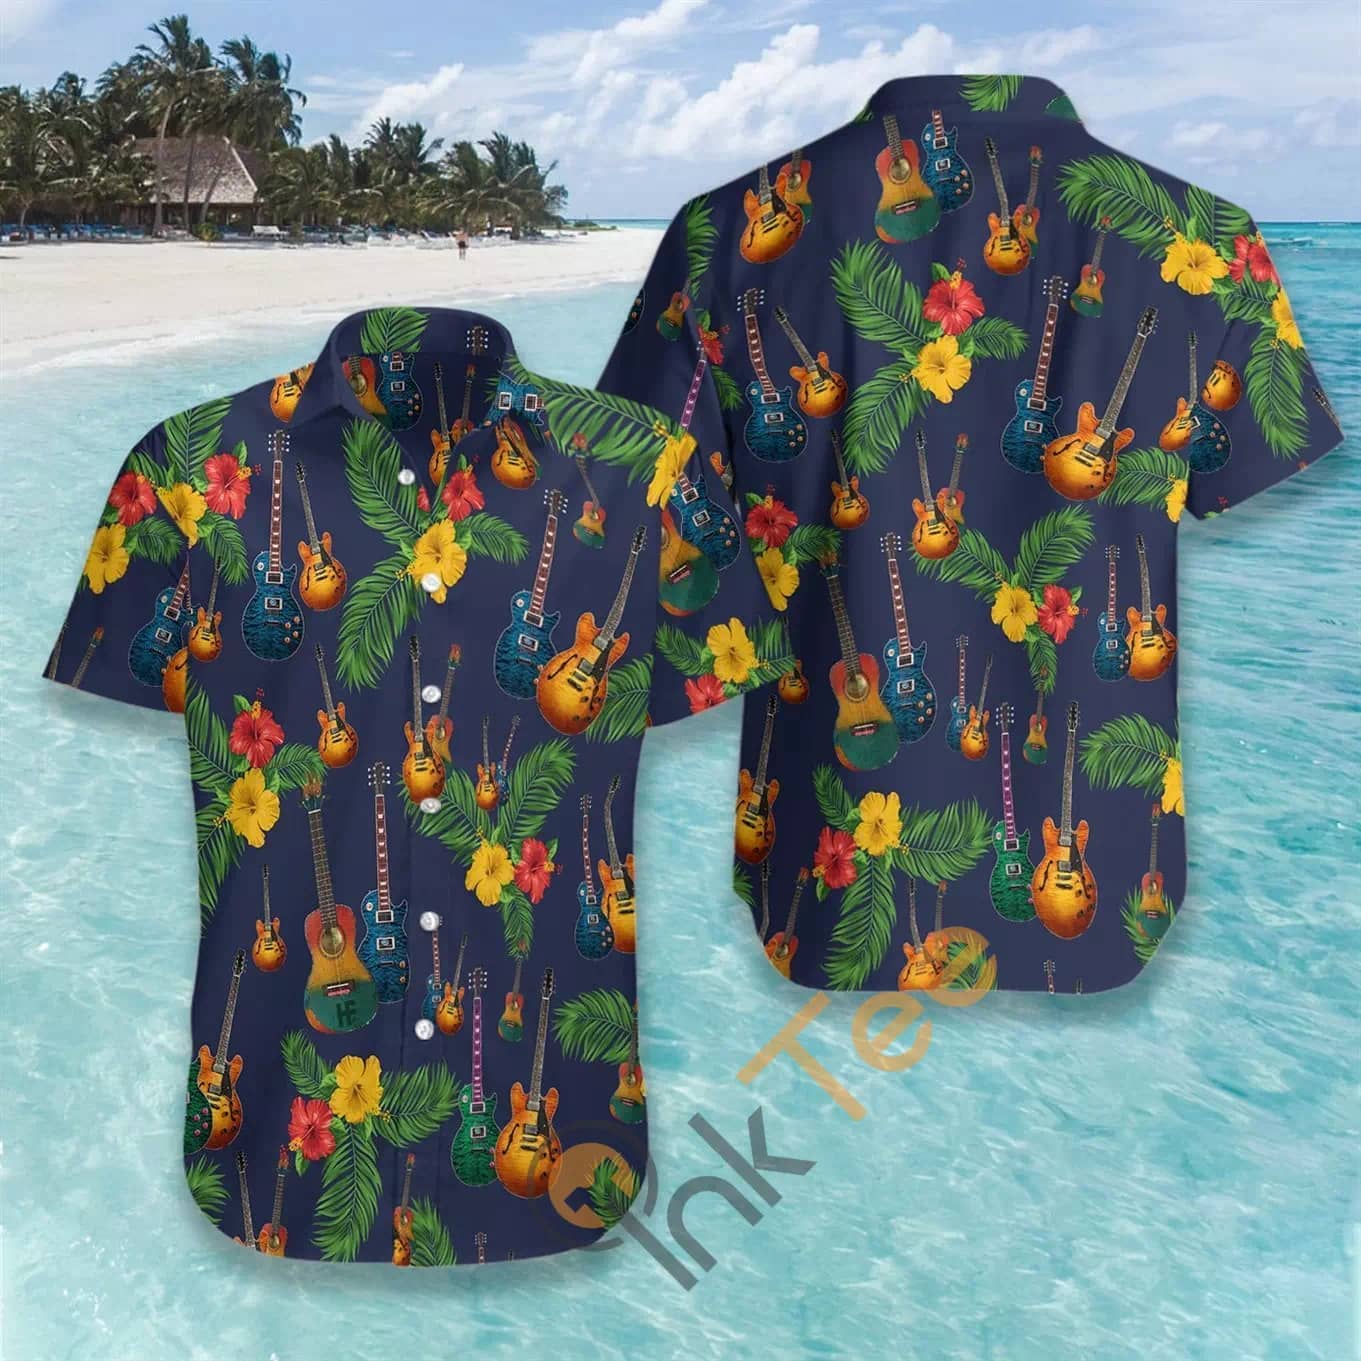 Guitar N507 Hawaiian shirts